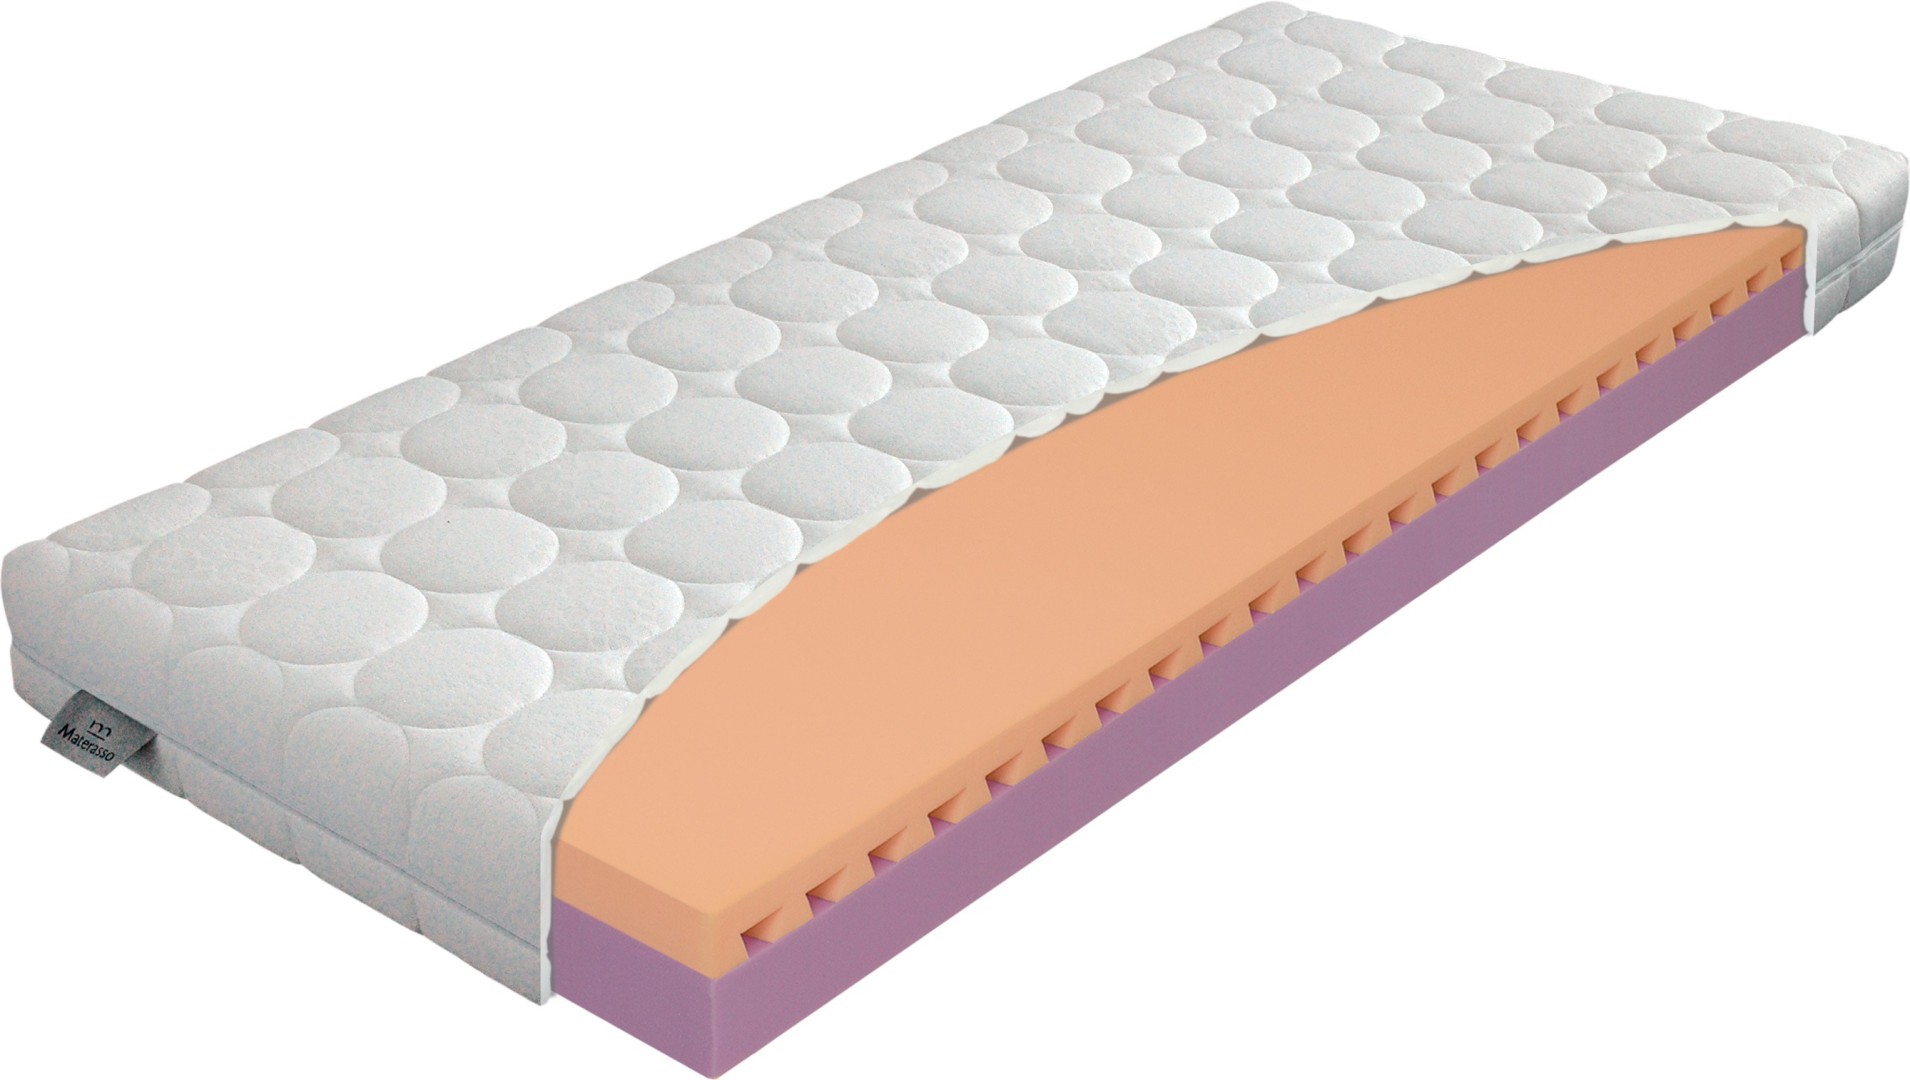 Materasso JUNIOR relax 13 cm - matrace pro zdravý spánek dětí 120 x 200 cm, snímatelný potah